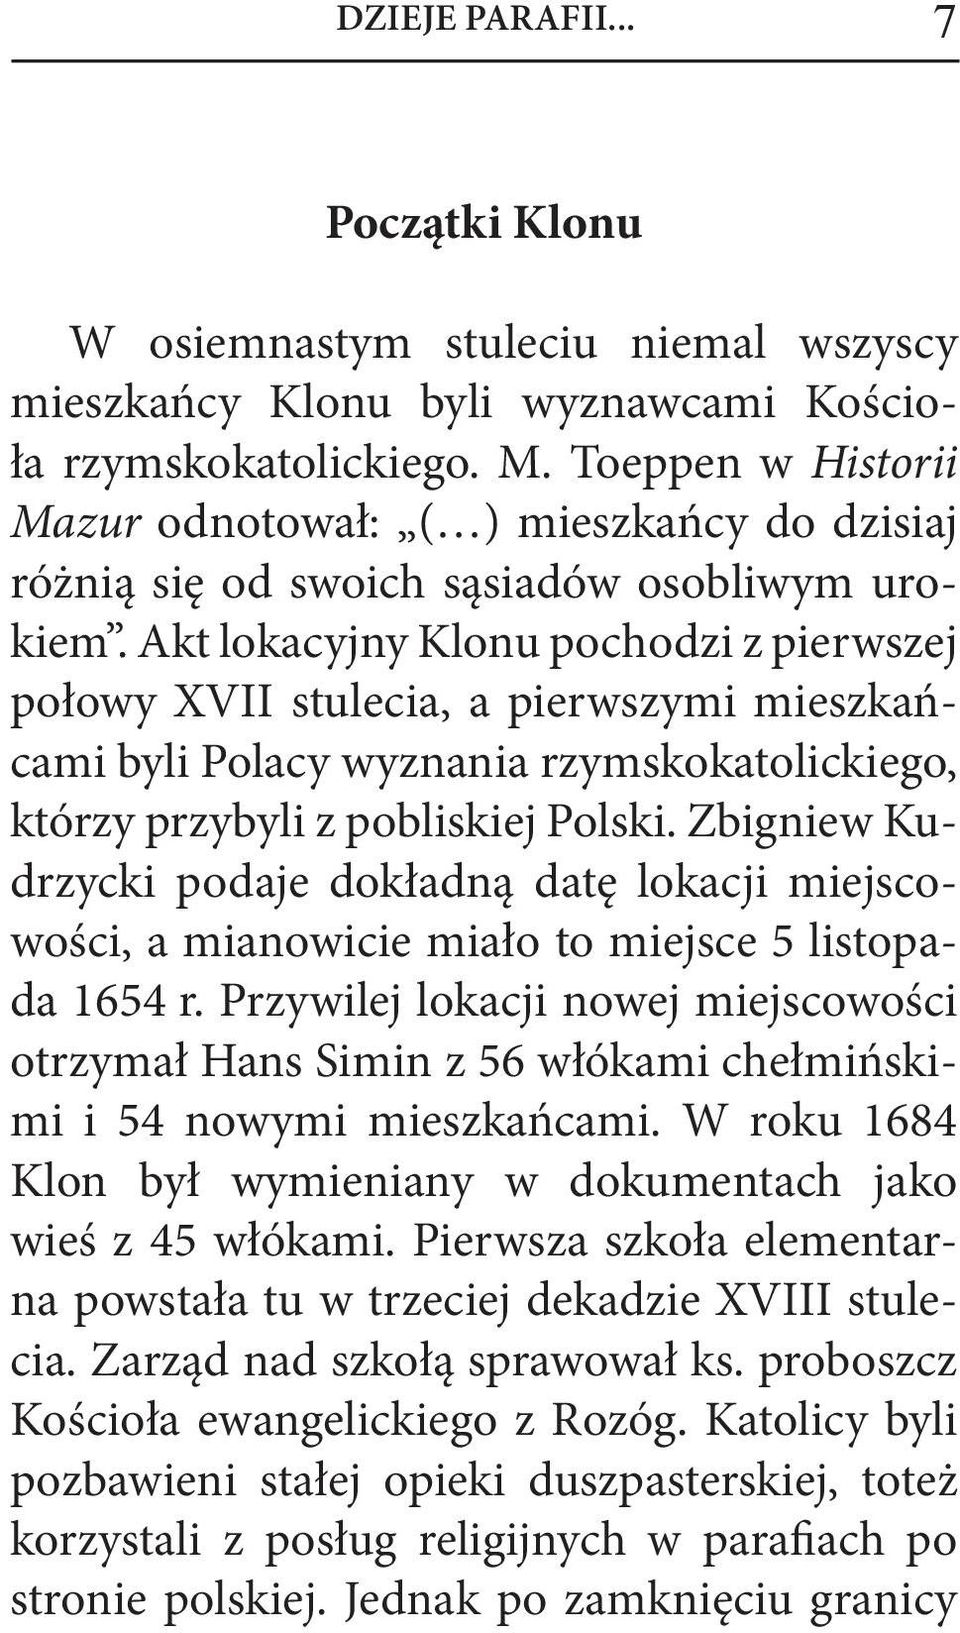 Akt lokacyjny Klonu pochodzi z pierwszej połowy XVII stulecia, a pierwszymi mieszkańcami byli Polacy wyznania rzymskokatolickiego, którzy przybyli z pobliskiej Polski.